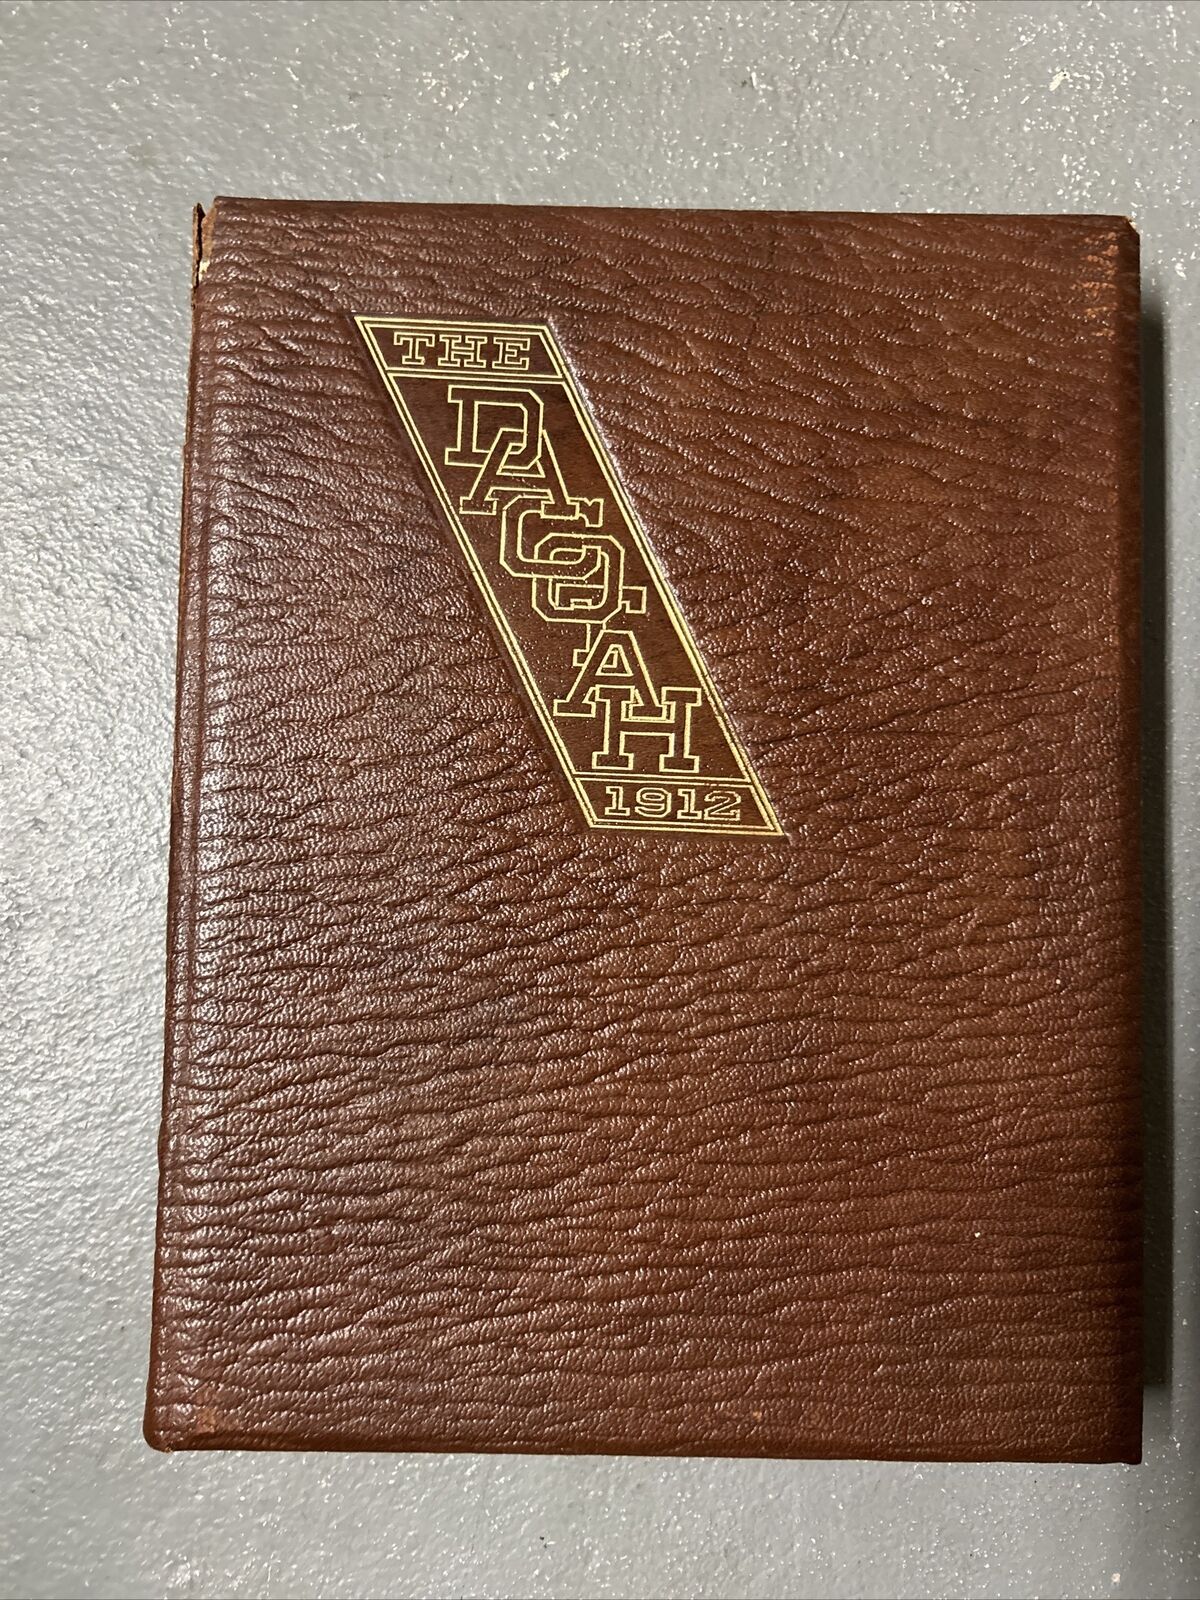 1912 University of North Dakota Dacotah yearbook